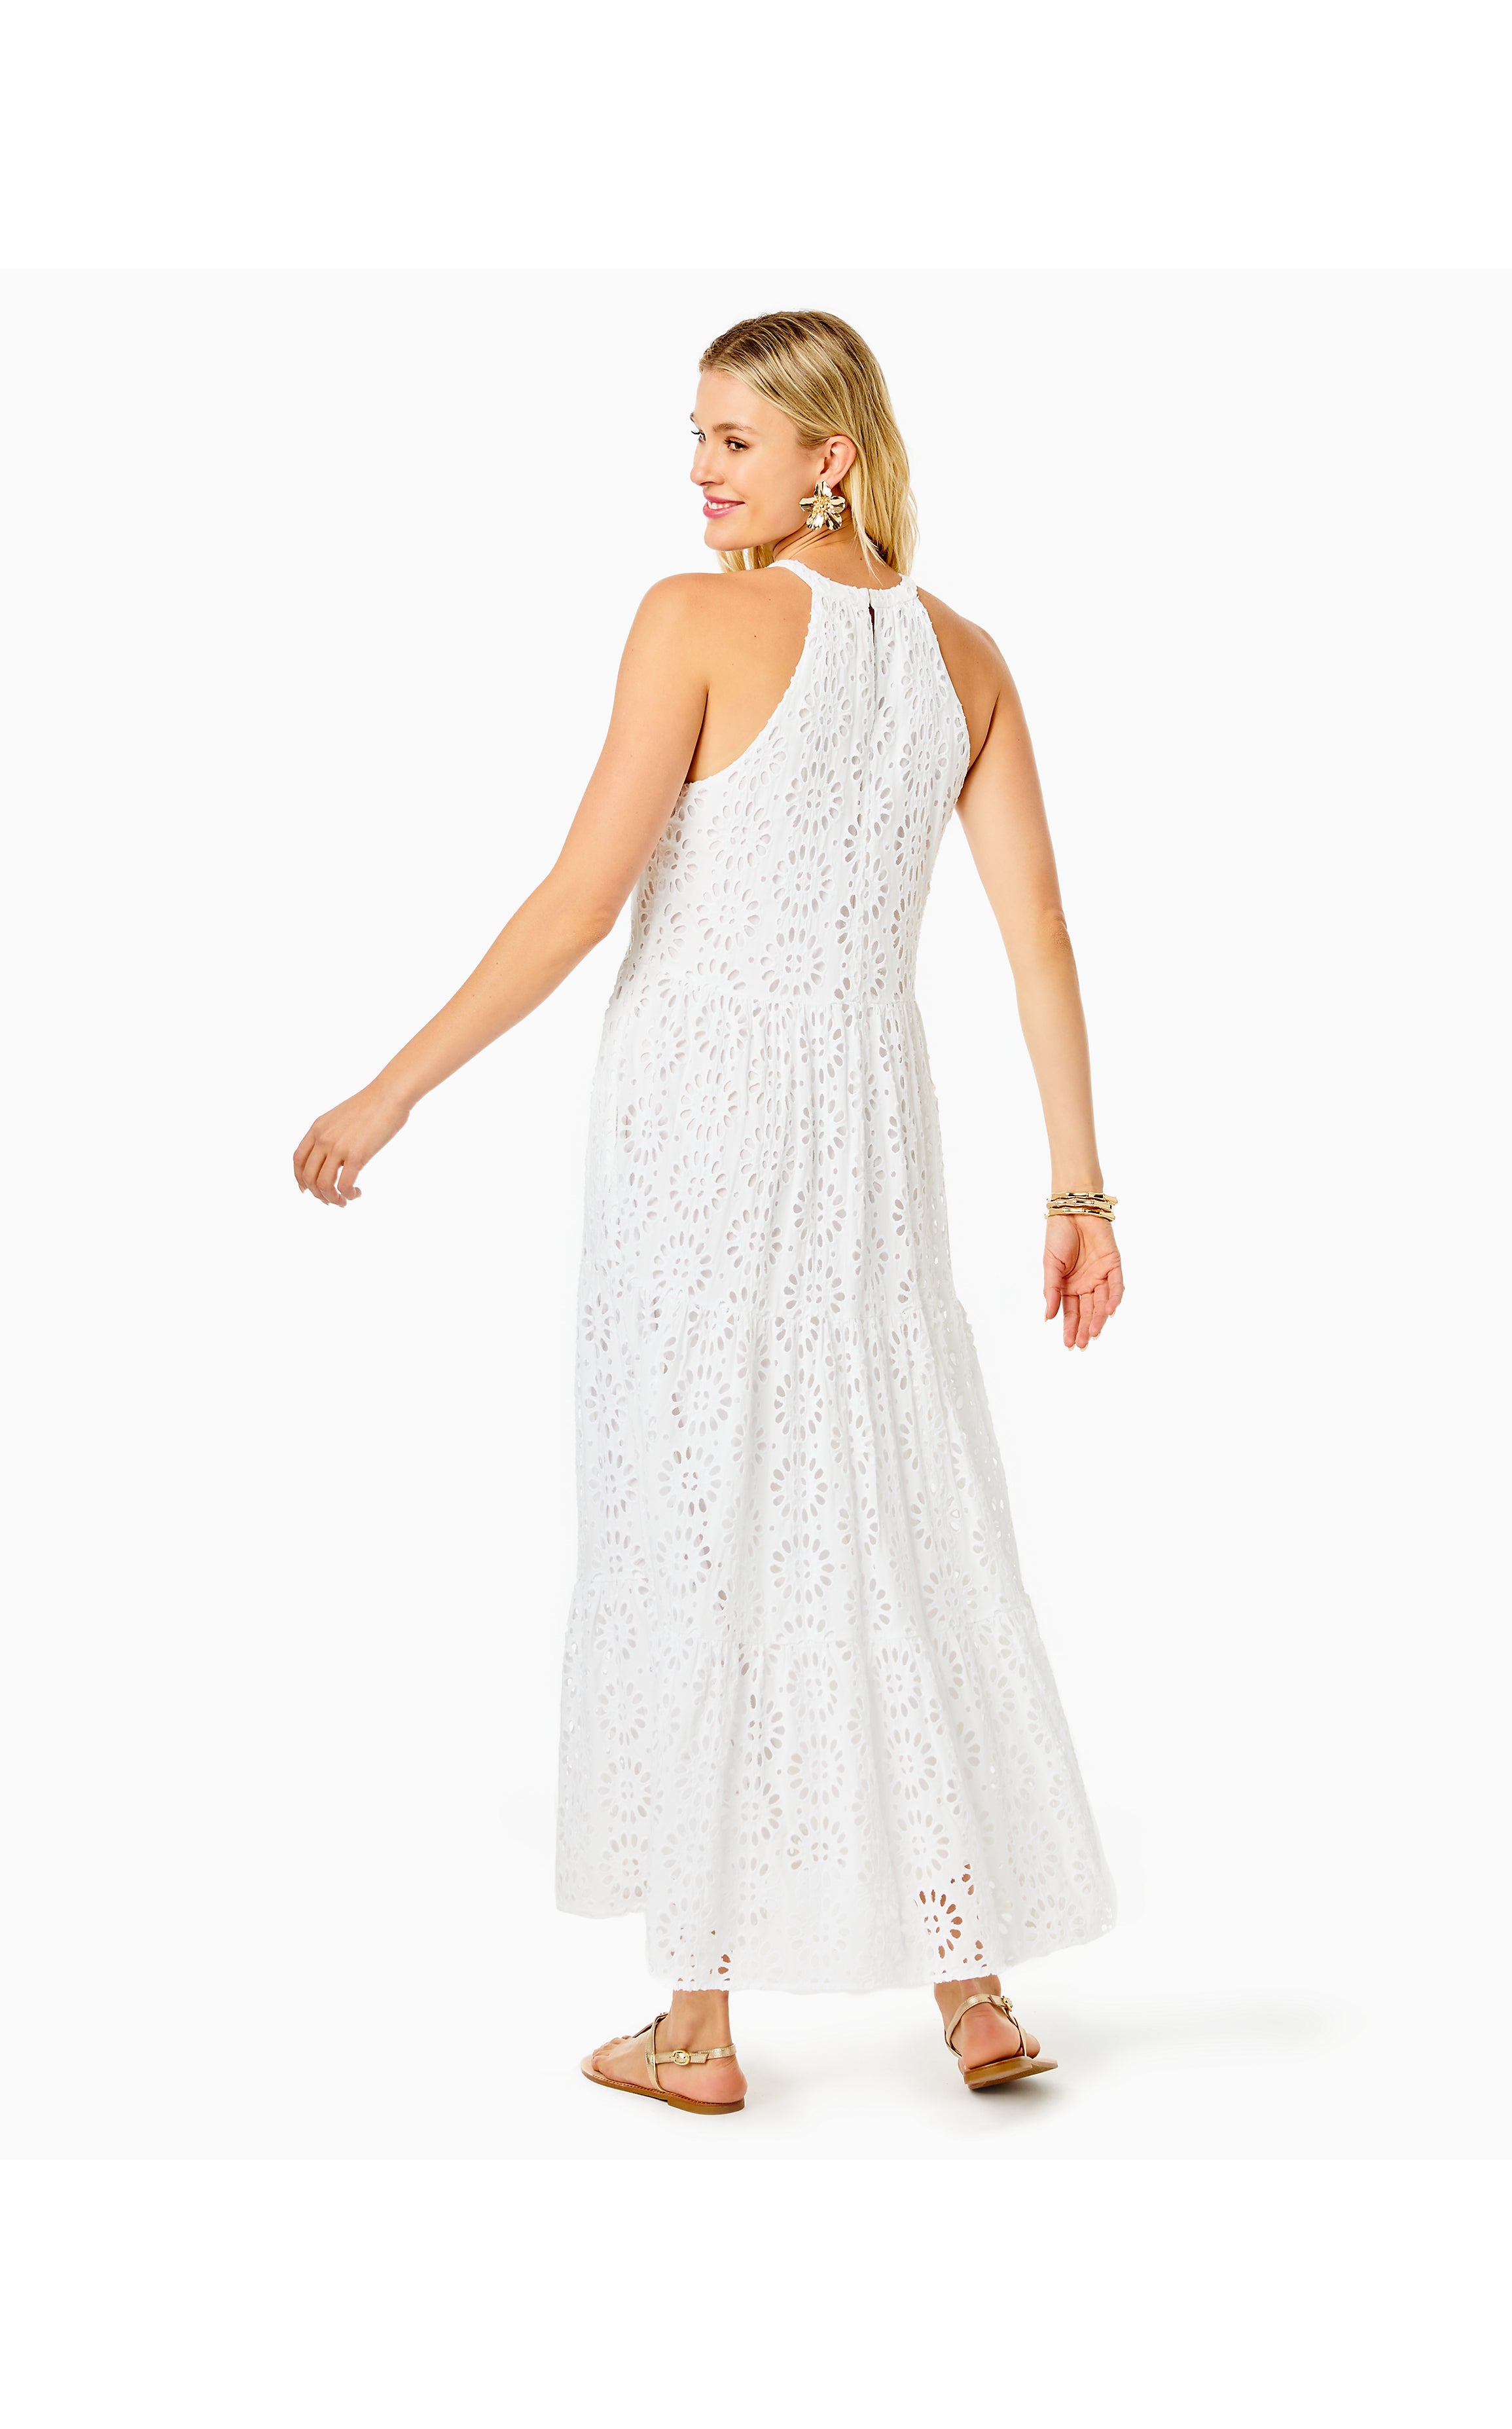 Beccalyn Eyelet Maxi Dress | Resort White Oversized Pinwheel Rayon Eyelet